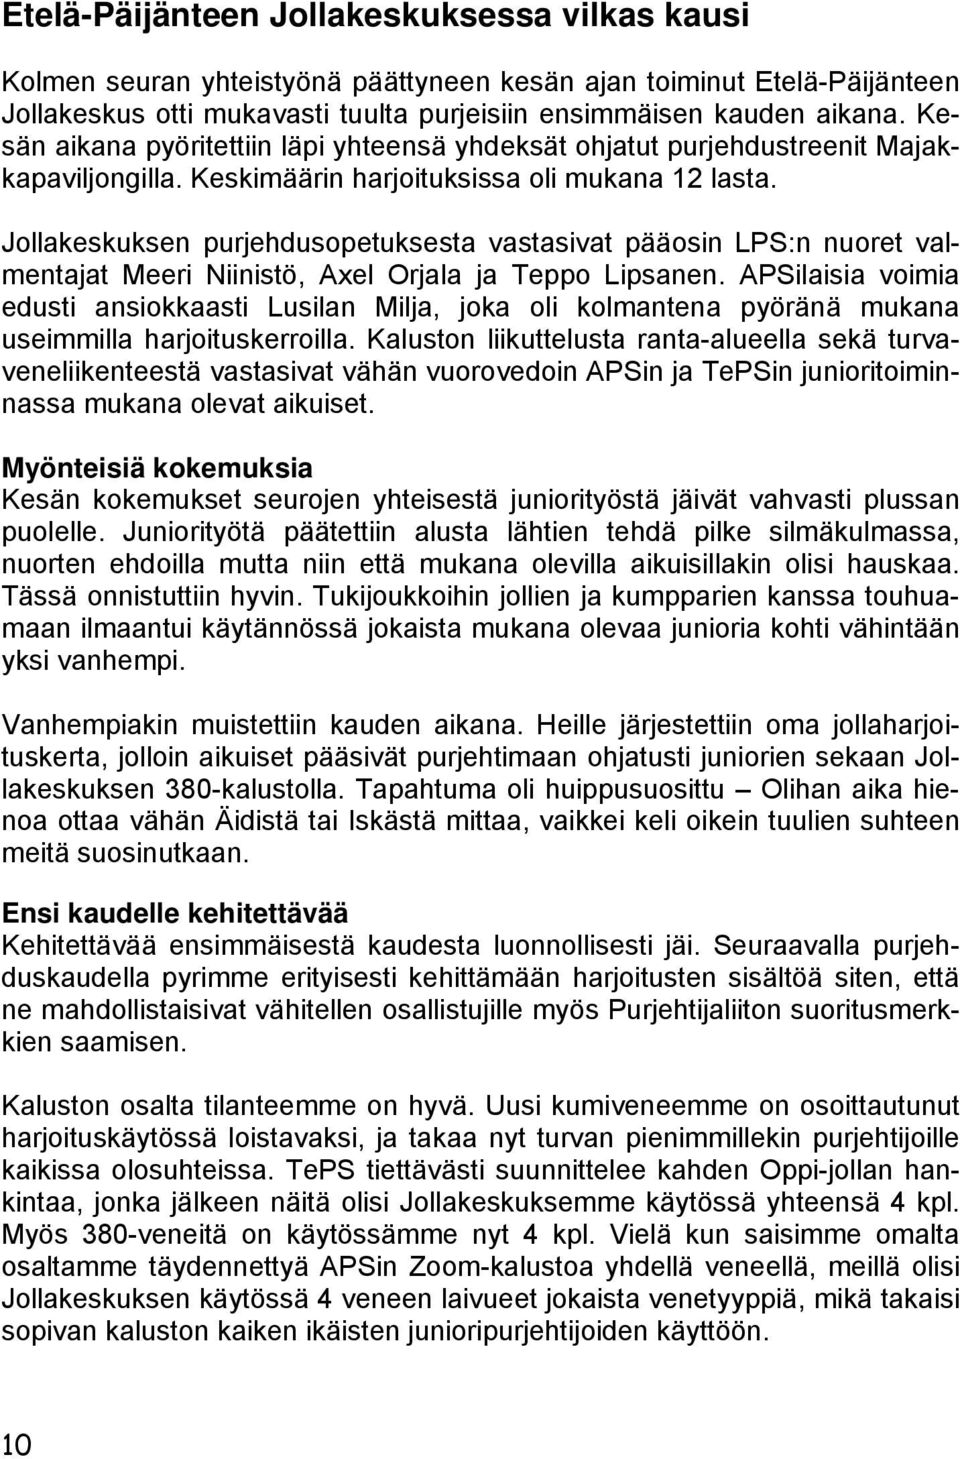 Jollakeskuksen purjehdusopetuksesta vastasivat pääosin LPS:n nuoret valmentajat Meeri Niinistö, Axel Orjala ja Teppo Lipsanen.